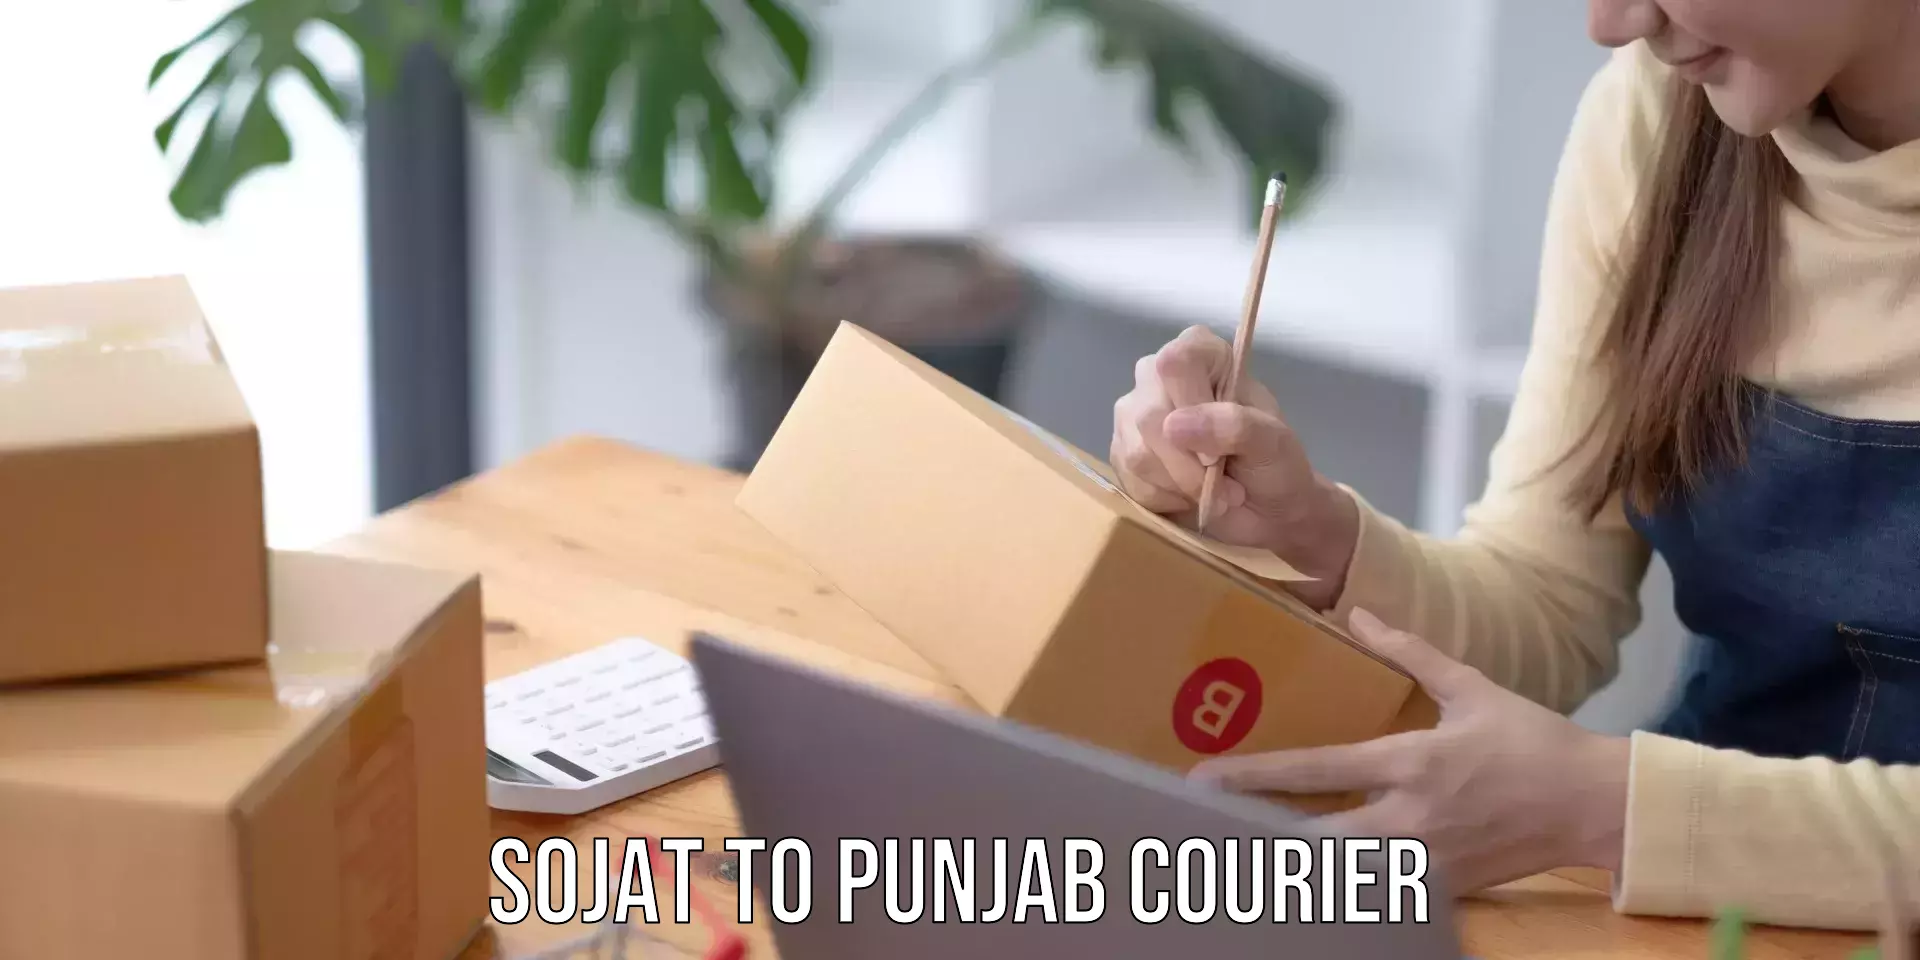 Professional courier handling Sojat to Garhshankar